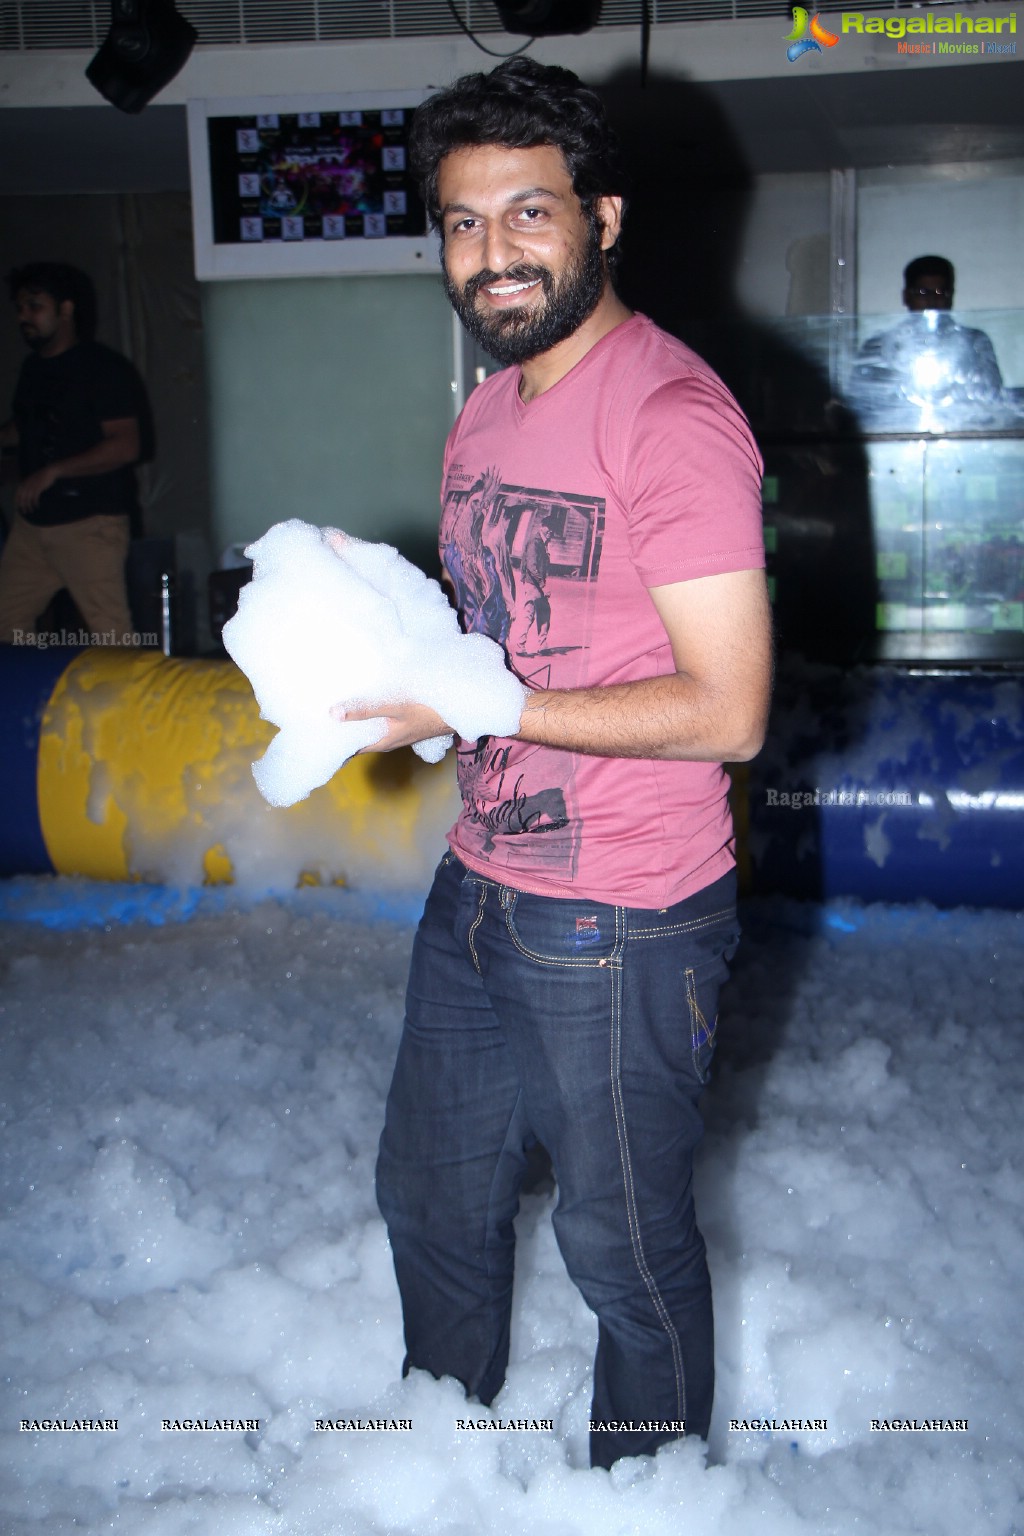 Foam Party at Hyderabad Club Republic